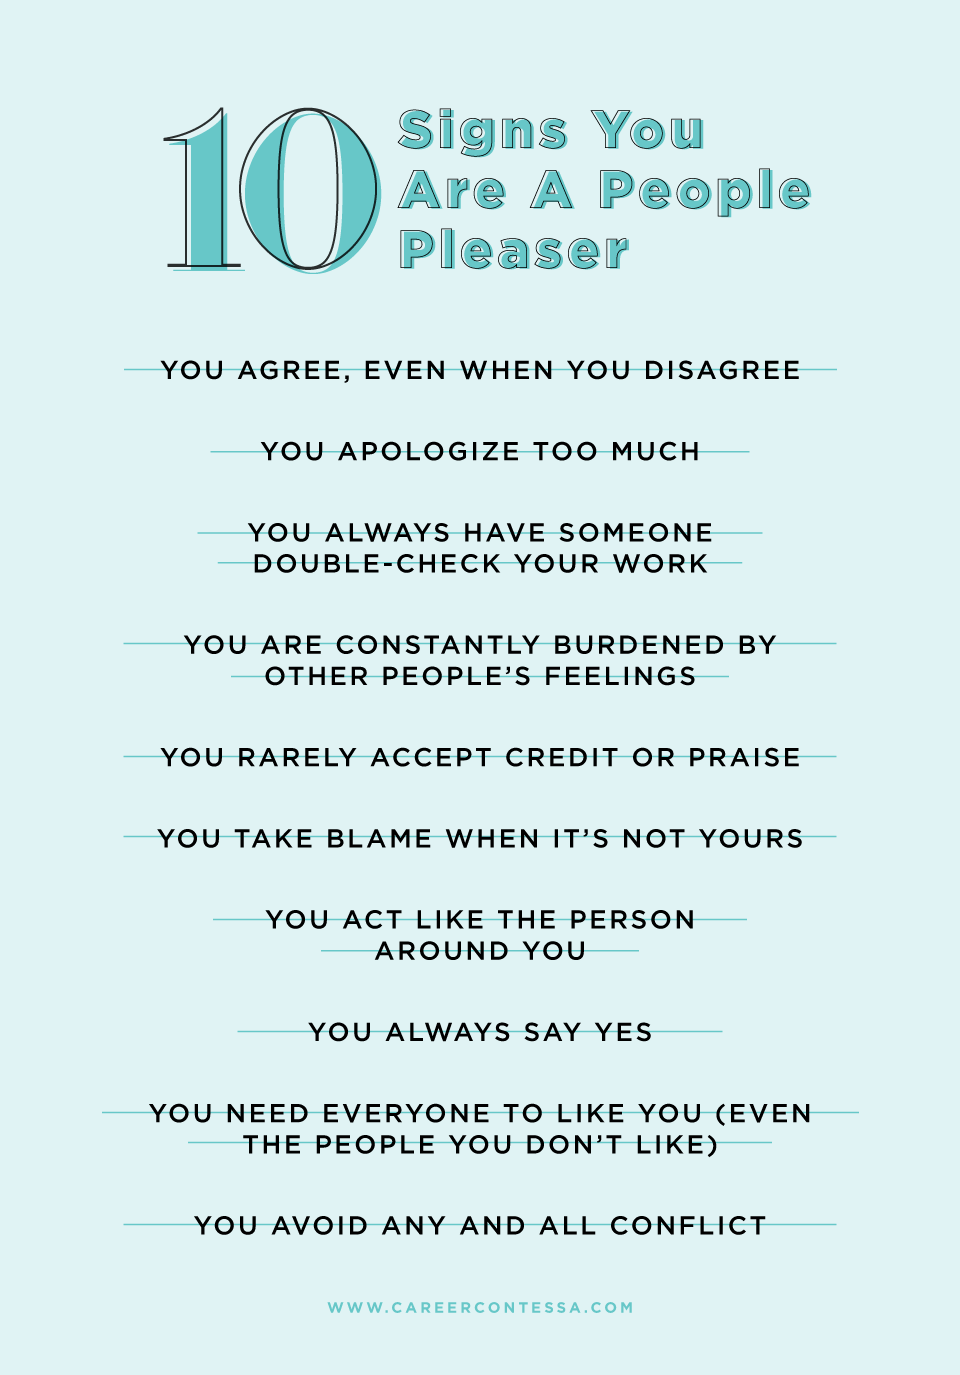 12 نشانه که شما راضی کننده مردم هستید (و چگونه می توان این عادت را ترک کرد)